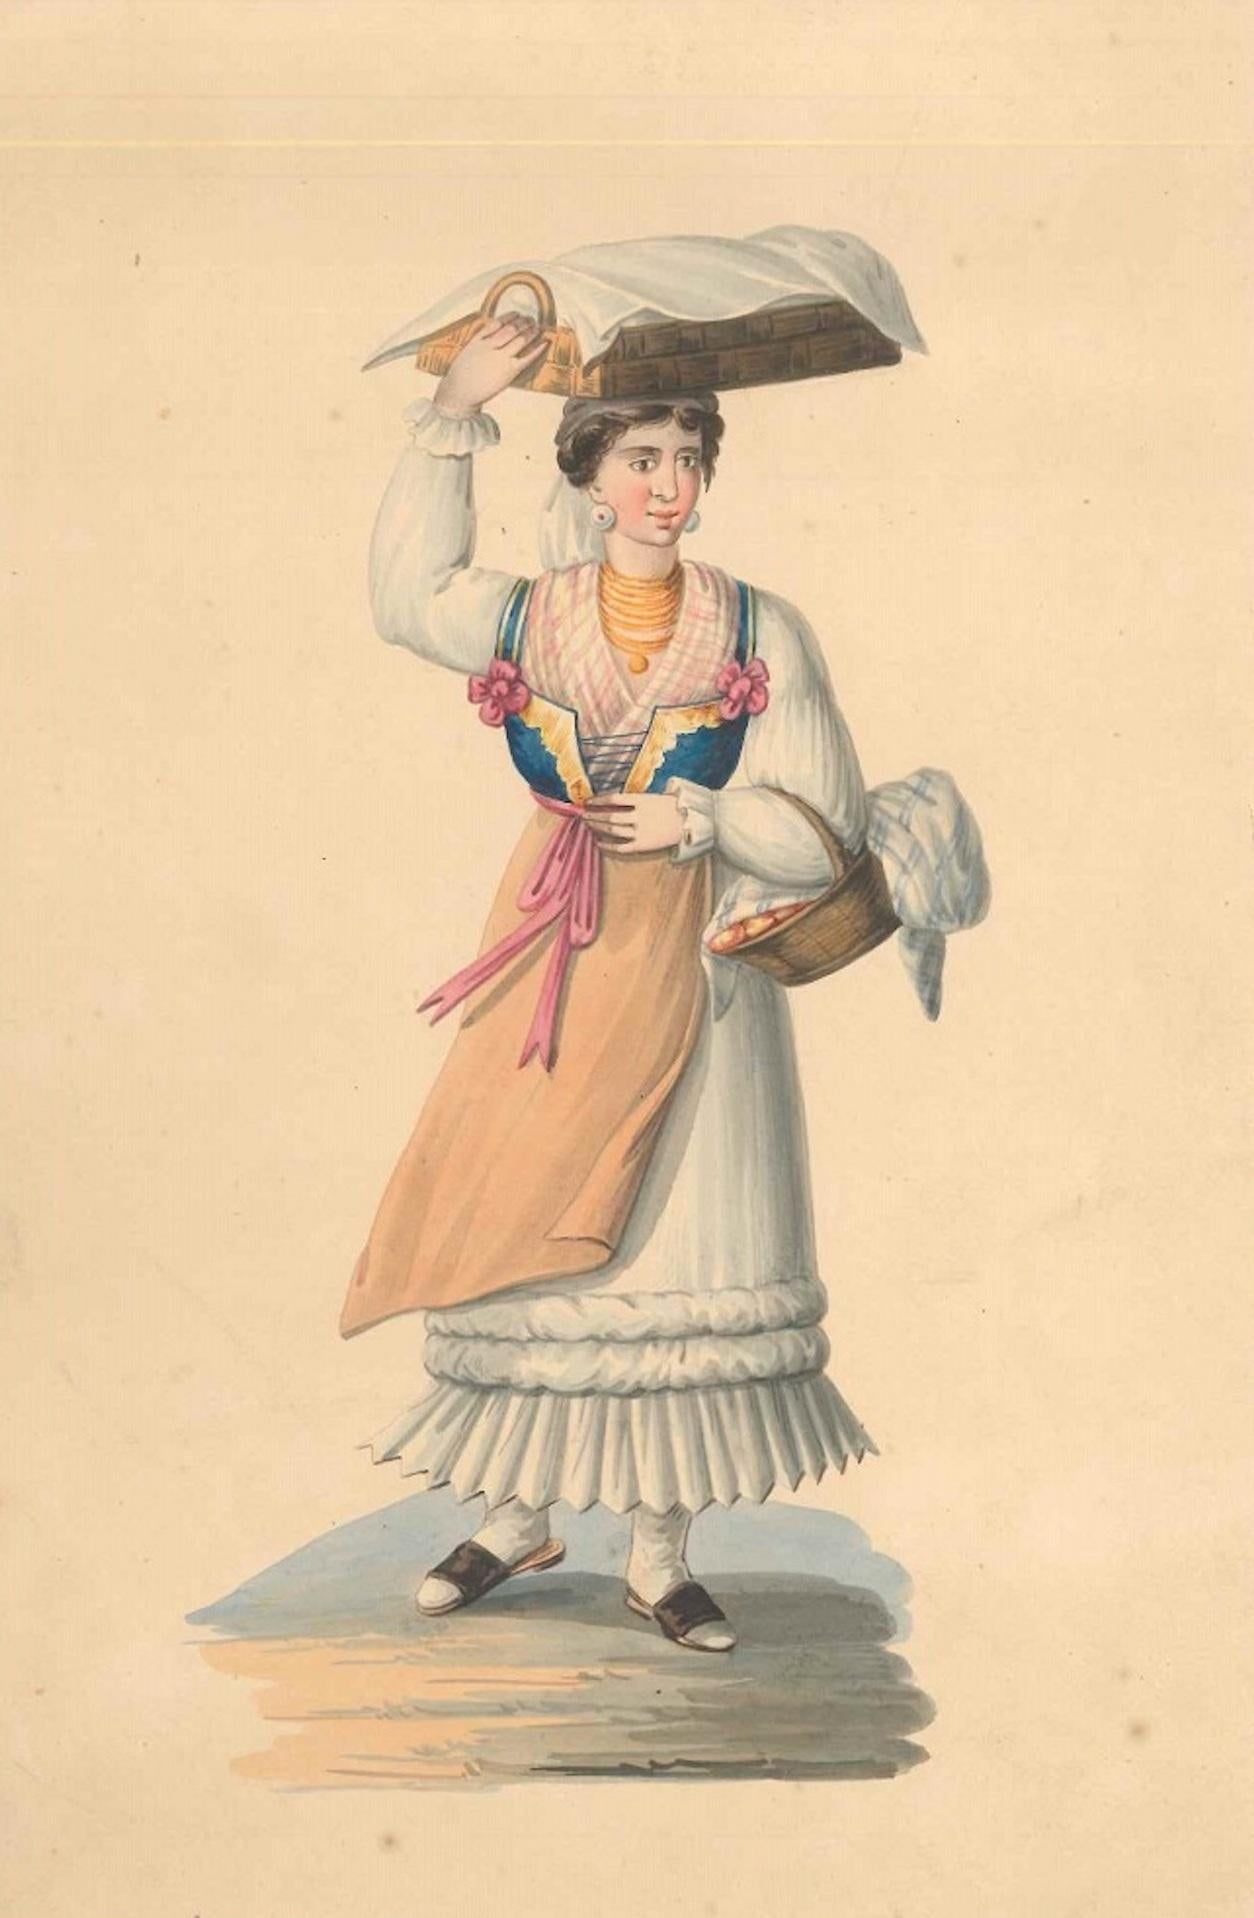 Michela De Vito Figurative Art - Woman with Baskets - Watercolor by M. De Vito - 1820 ca.